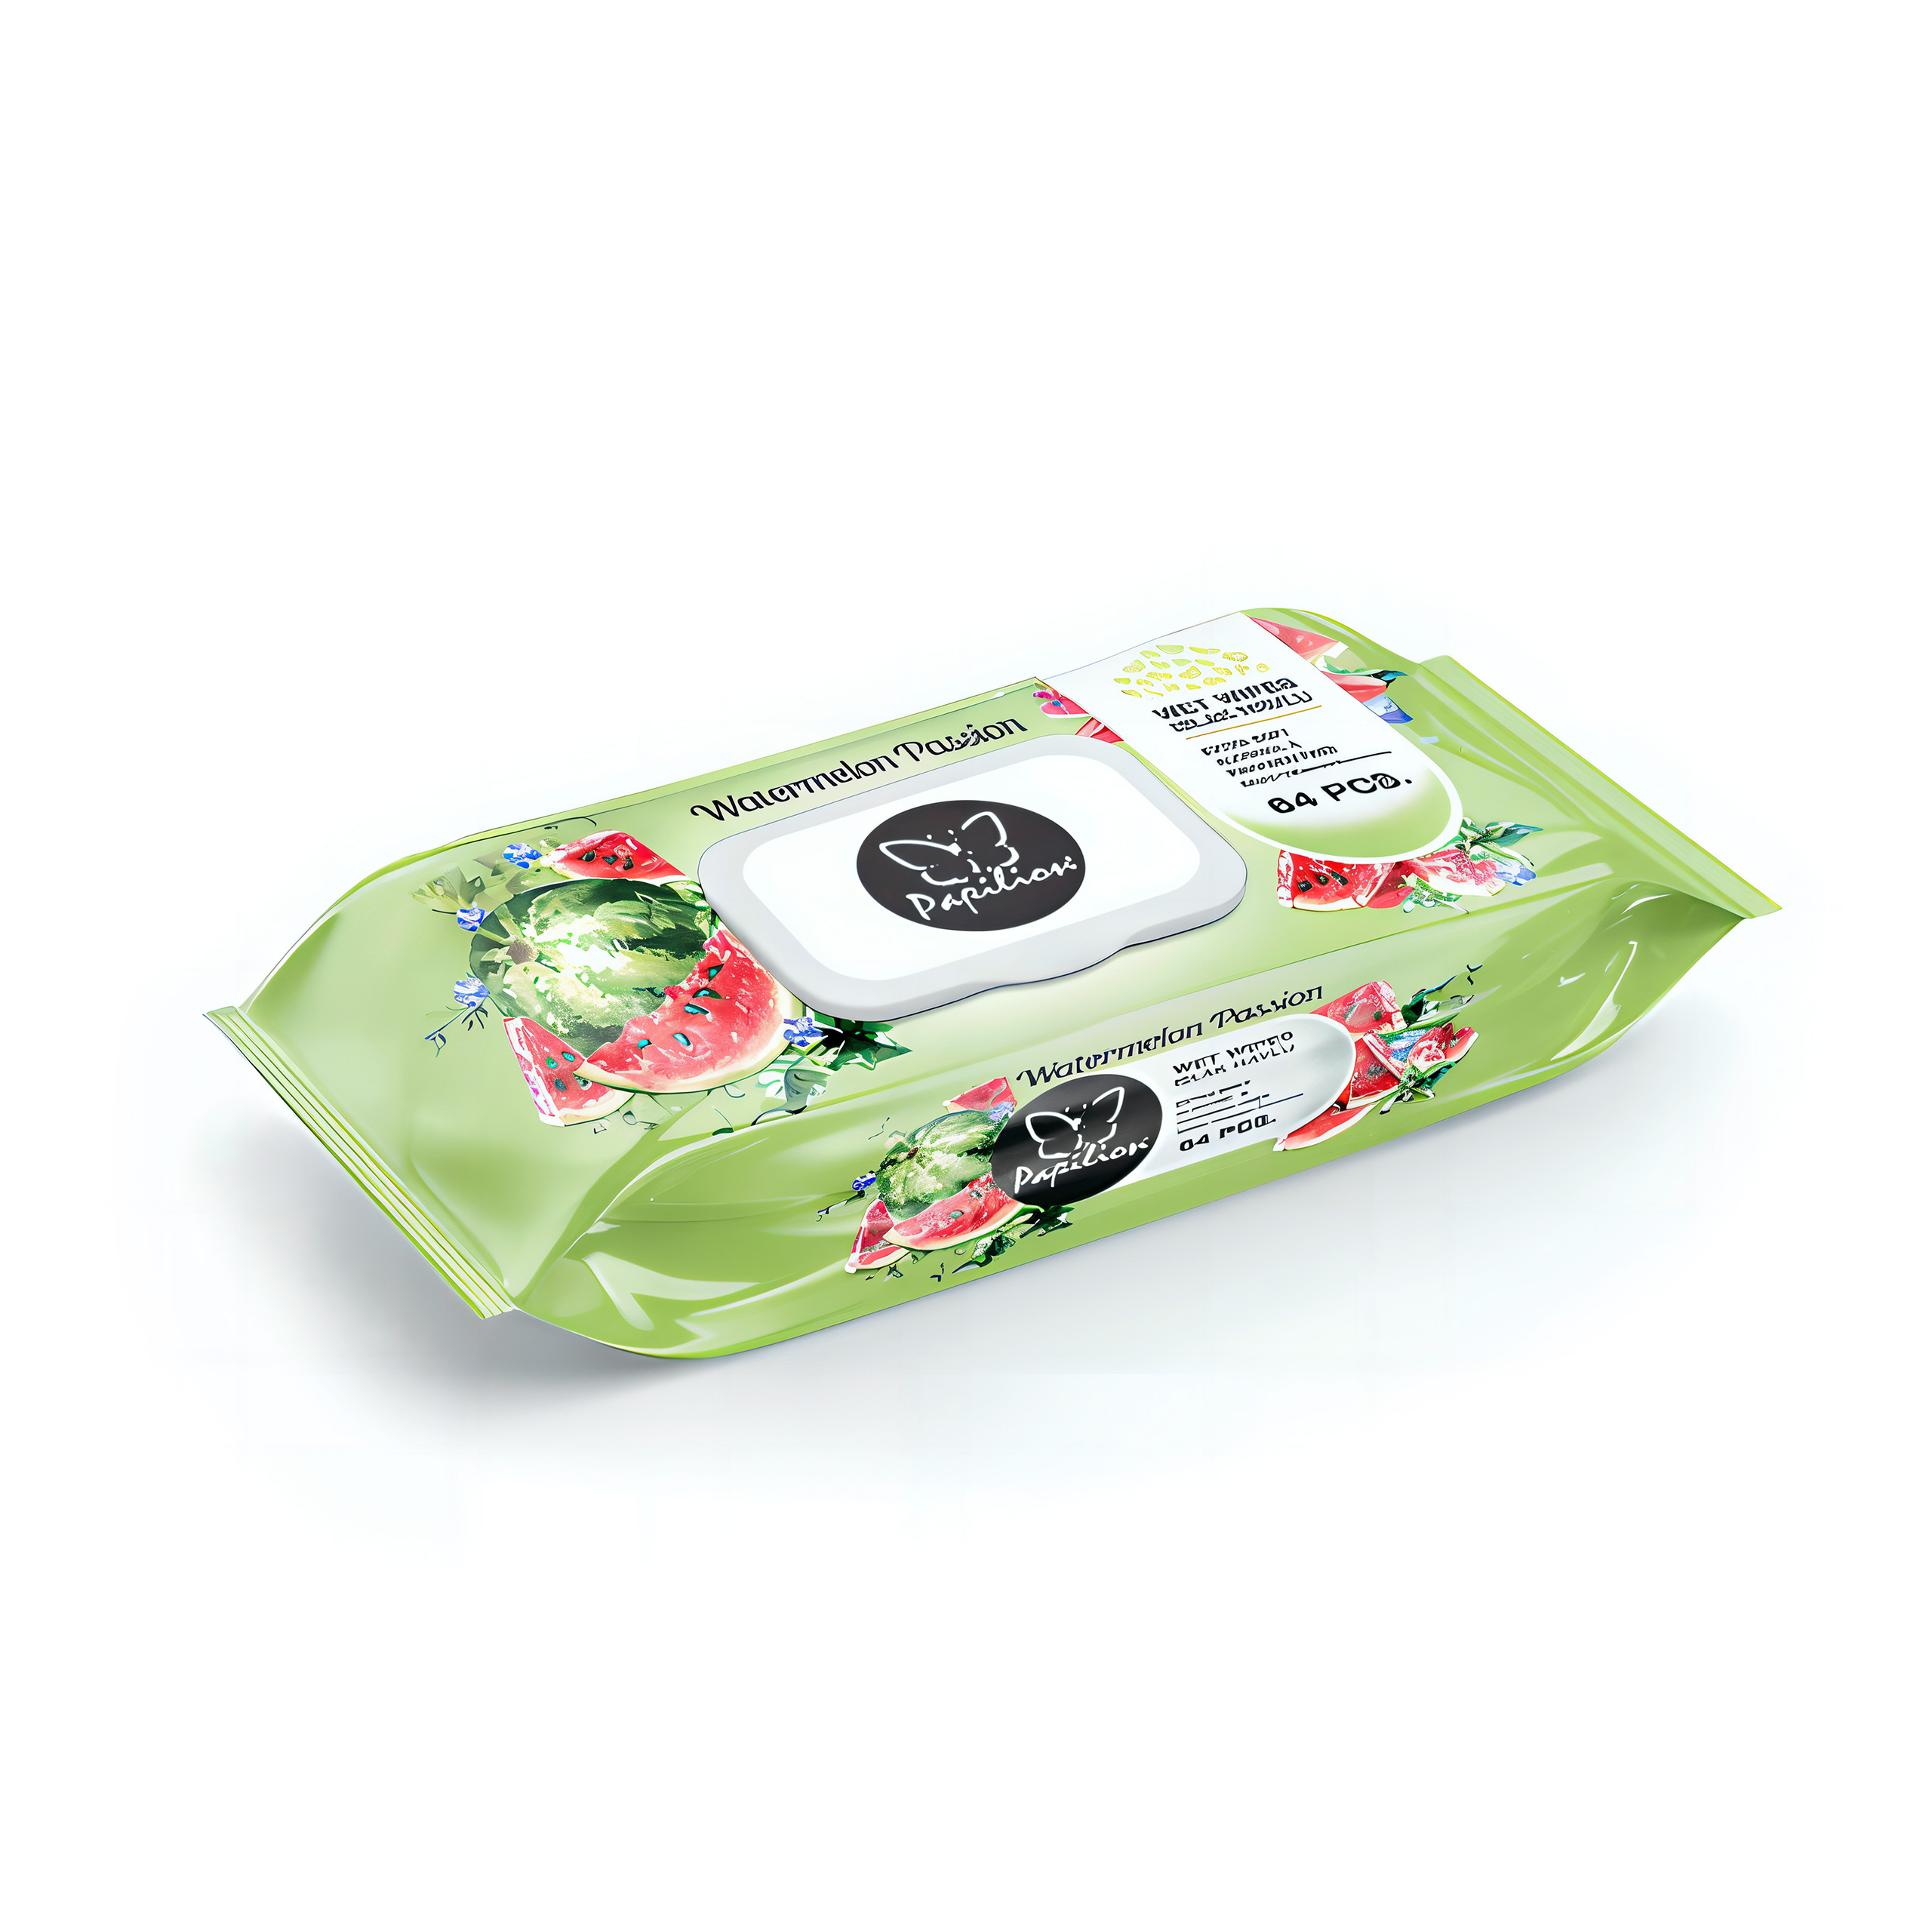 Купить Влажные салфетки Papilion Watermelon 64 шт оптом, в наличии и на заказ